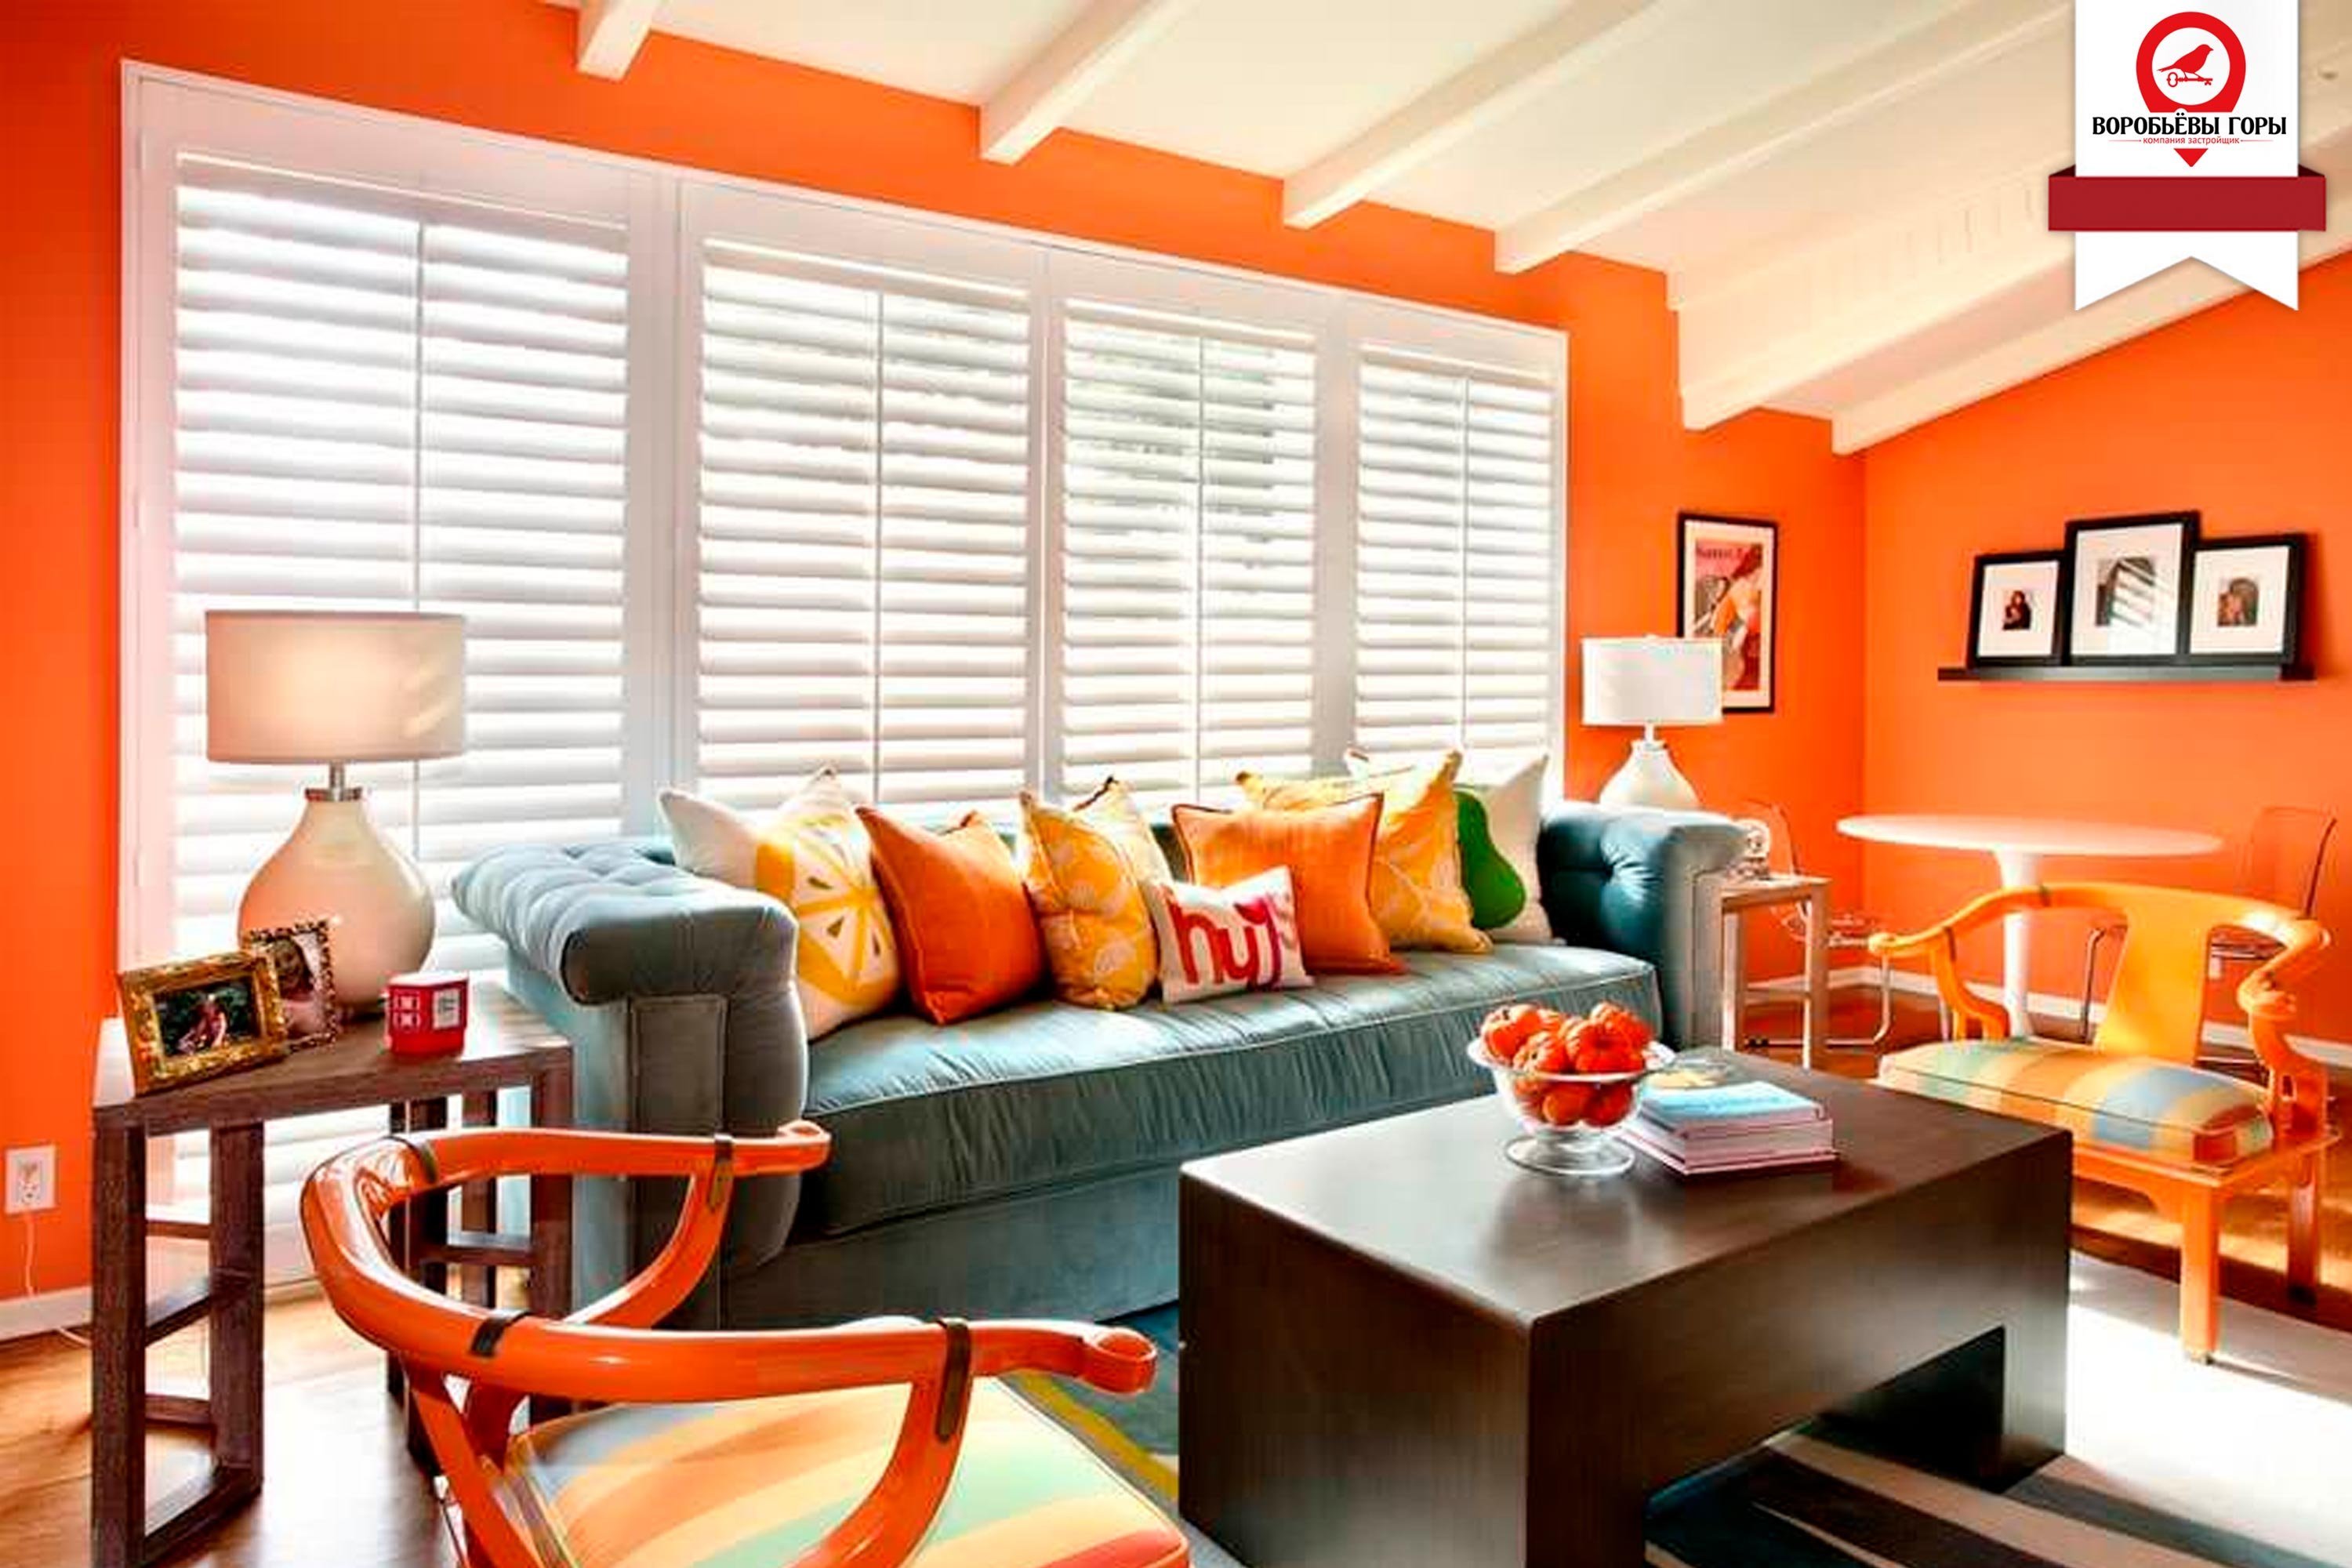 Оранжевый цвет по другому. Гостиная в оранжевом цвете. Оранжевый цвет в интерьере. Комната с оранжевыми стенами. Сочетание оранжевого в интерьере.